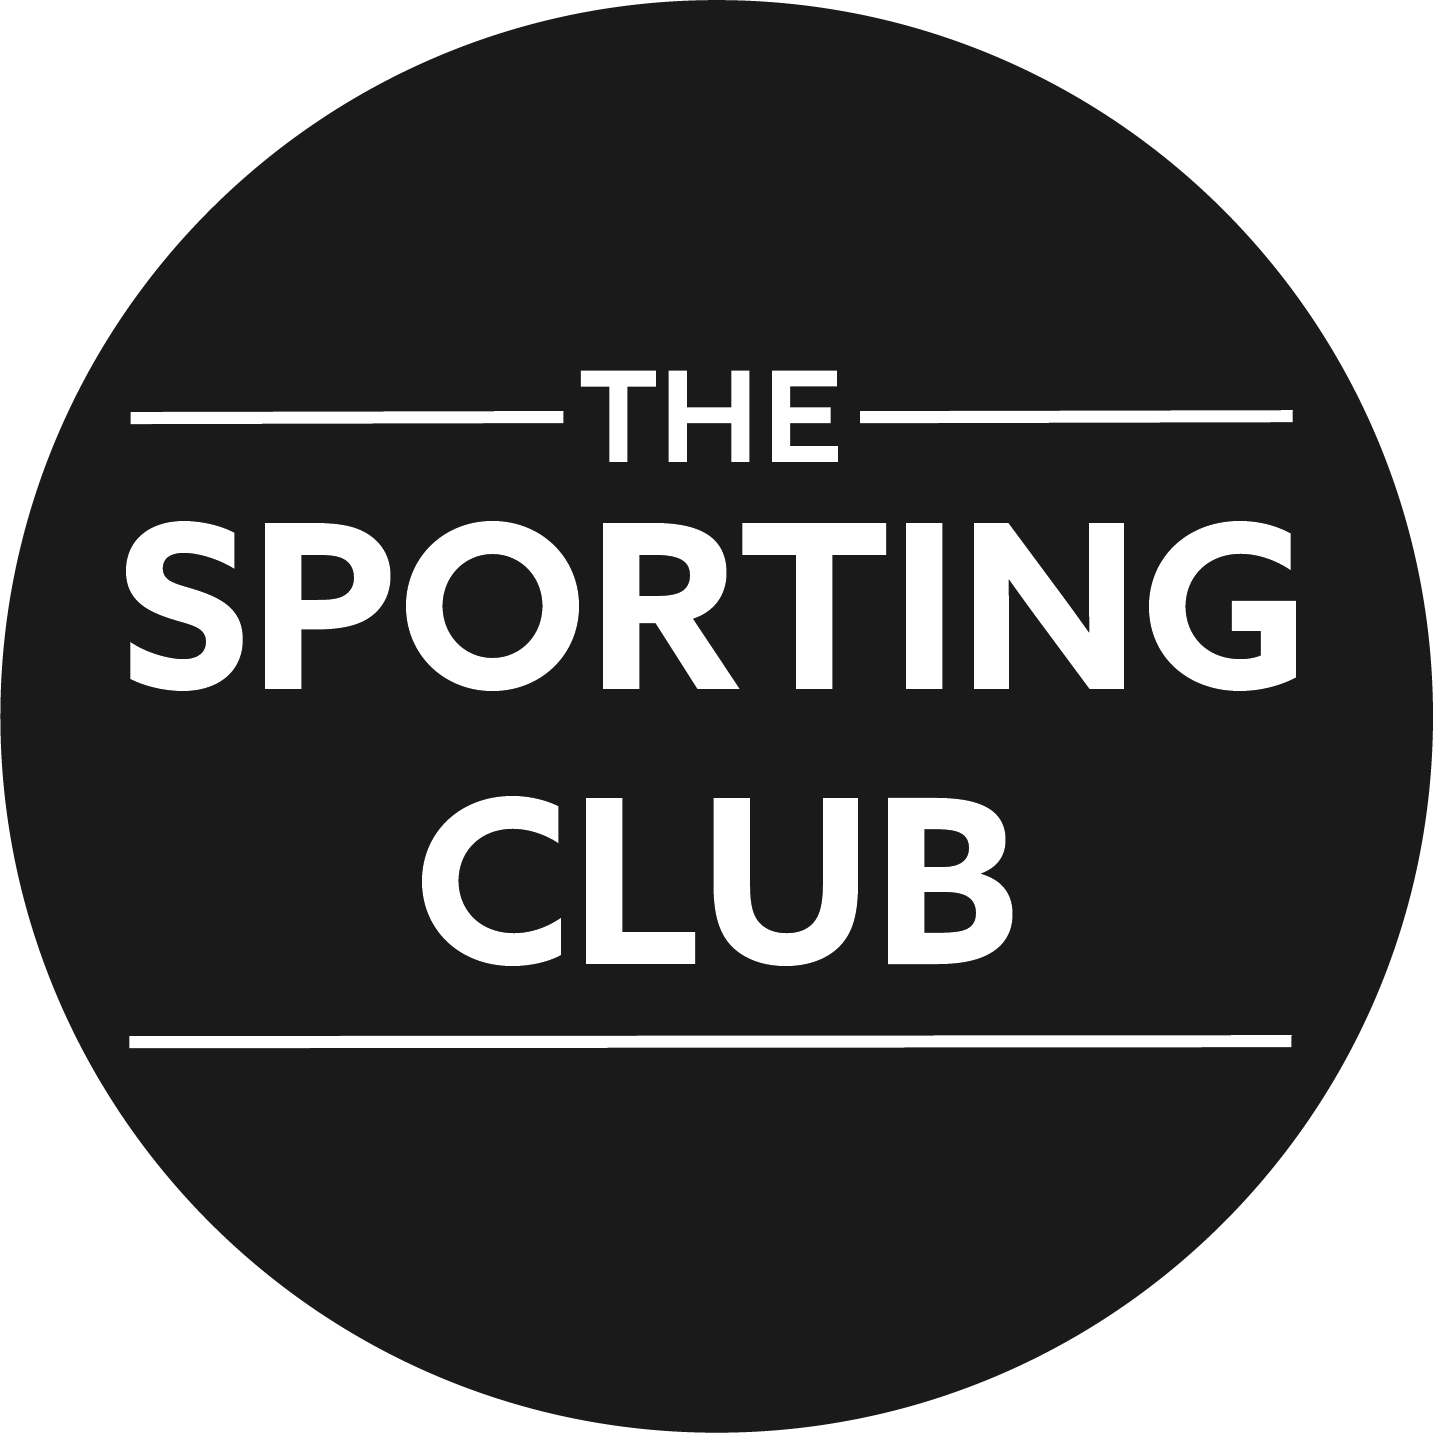 The sporting club logo